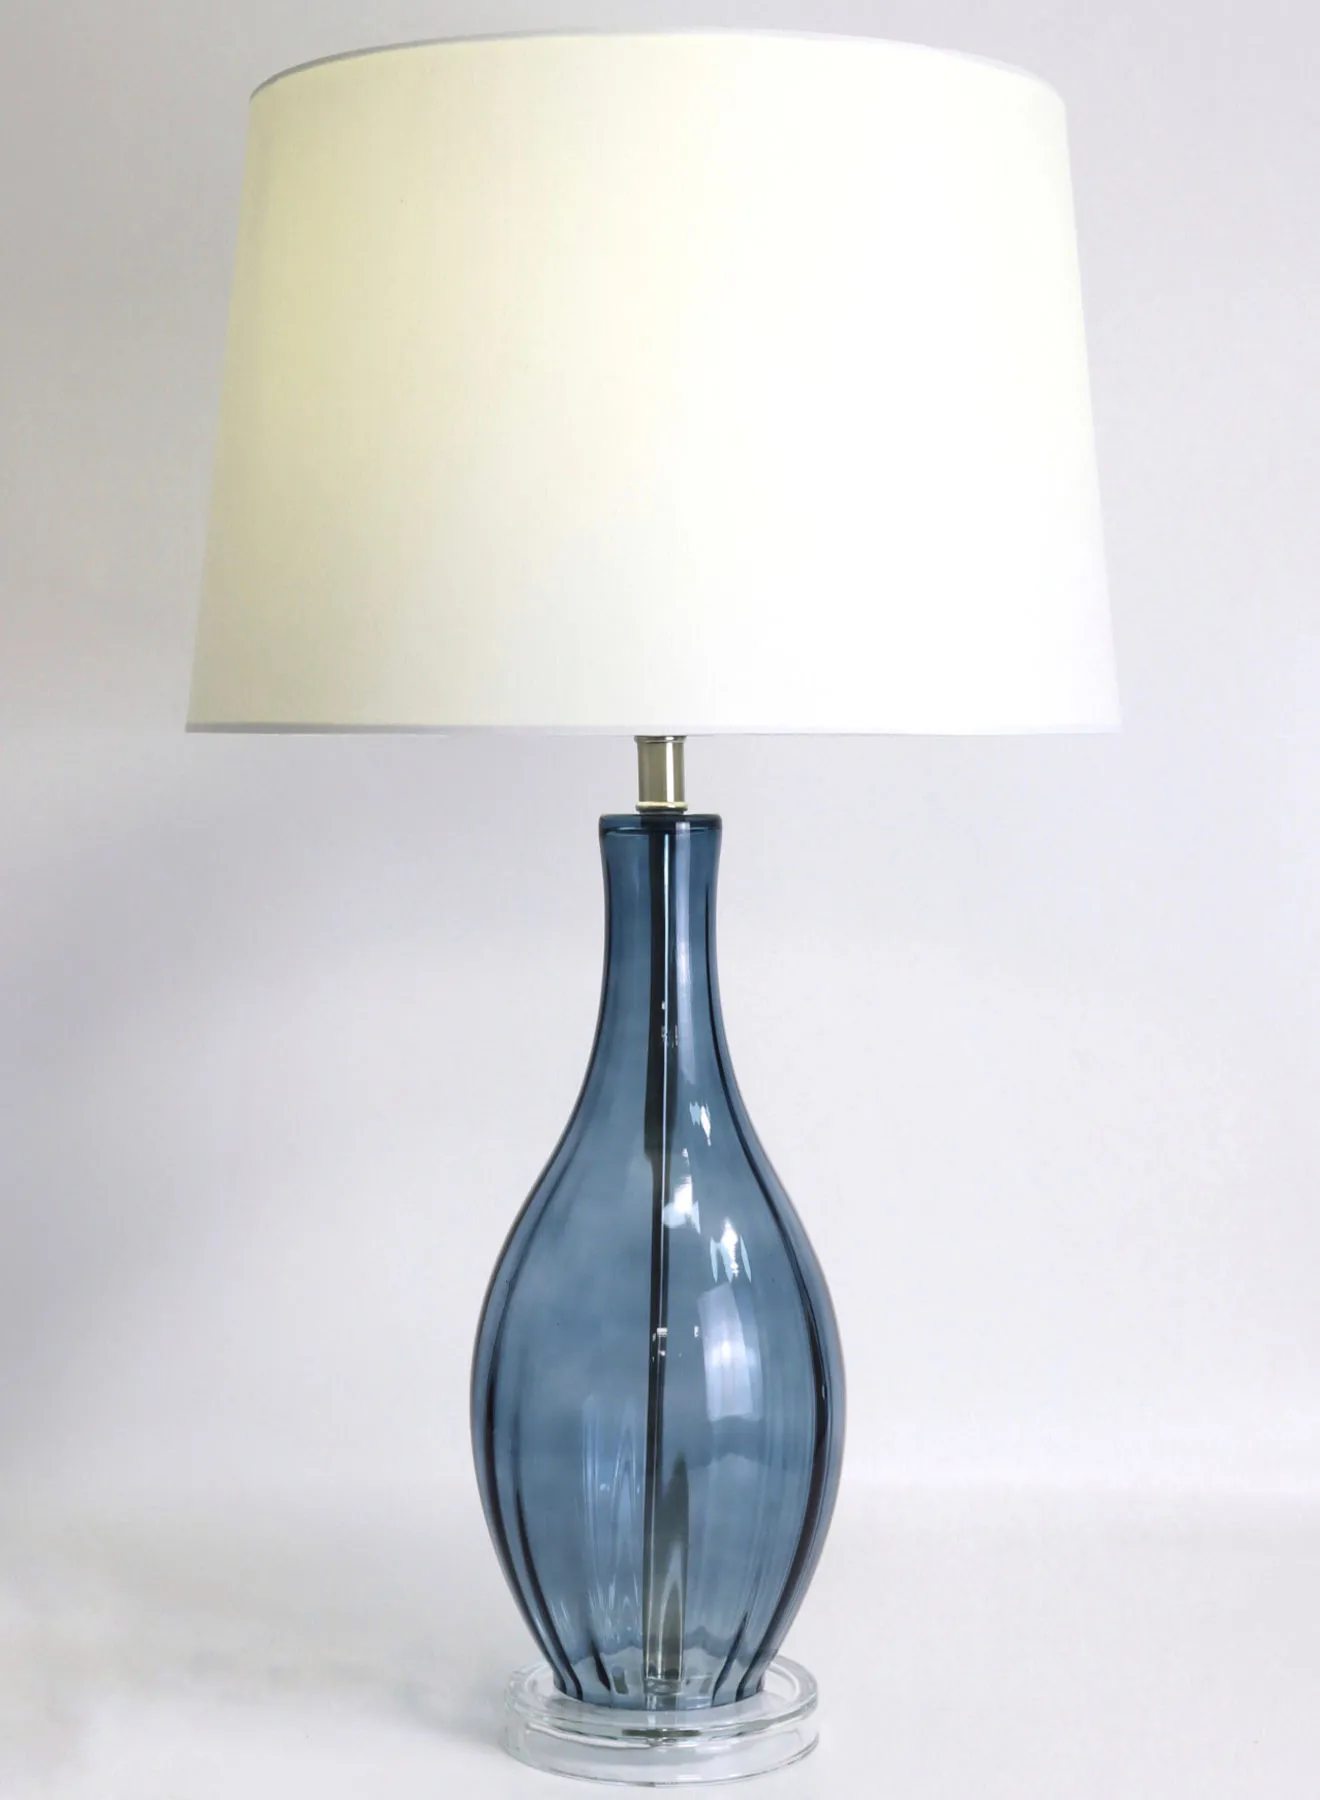 مصباح طاولة زجاجي بتصميم عصري من ebb & flow مادة فاخرة فريدة من نوعها ذات جودة عالية لمنزل أنيق مثالي RSN71027 أزرق 15 × 25.5